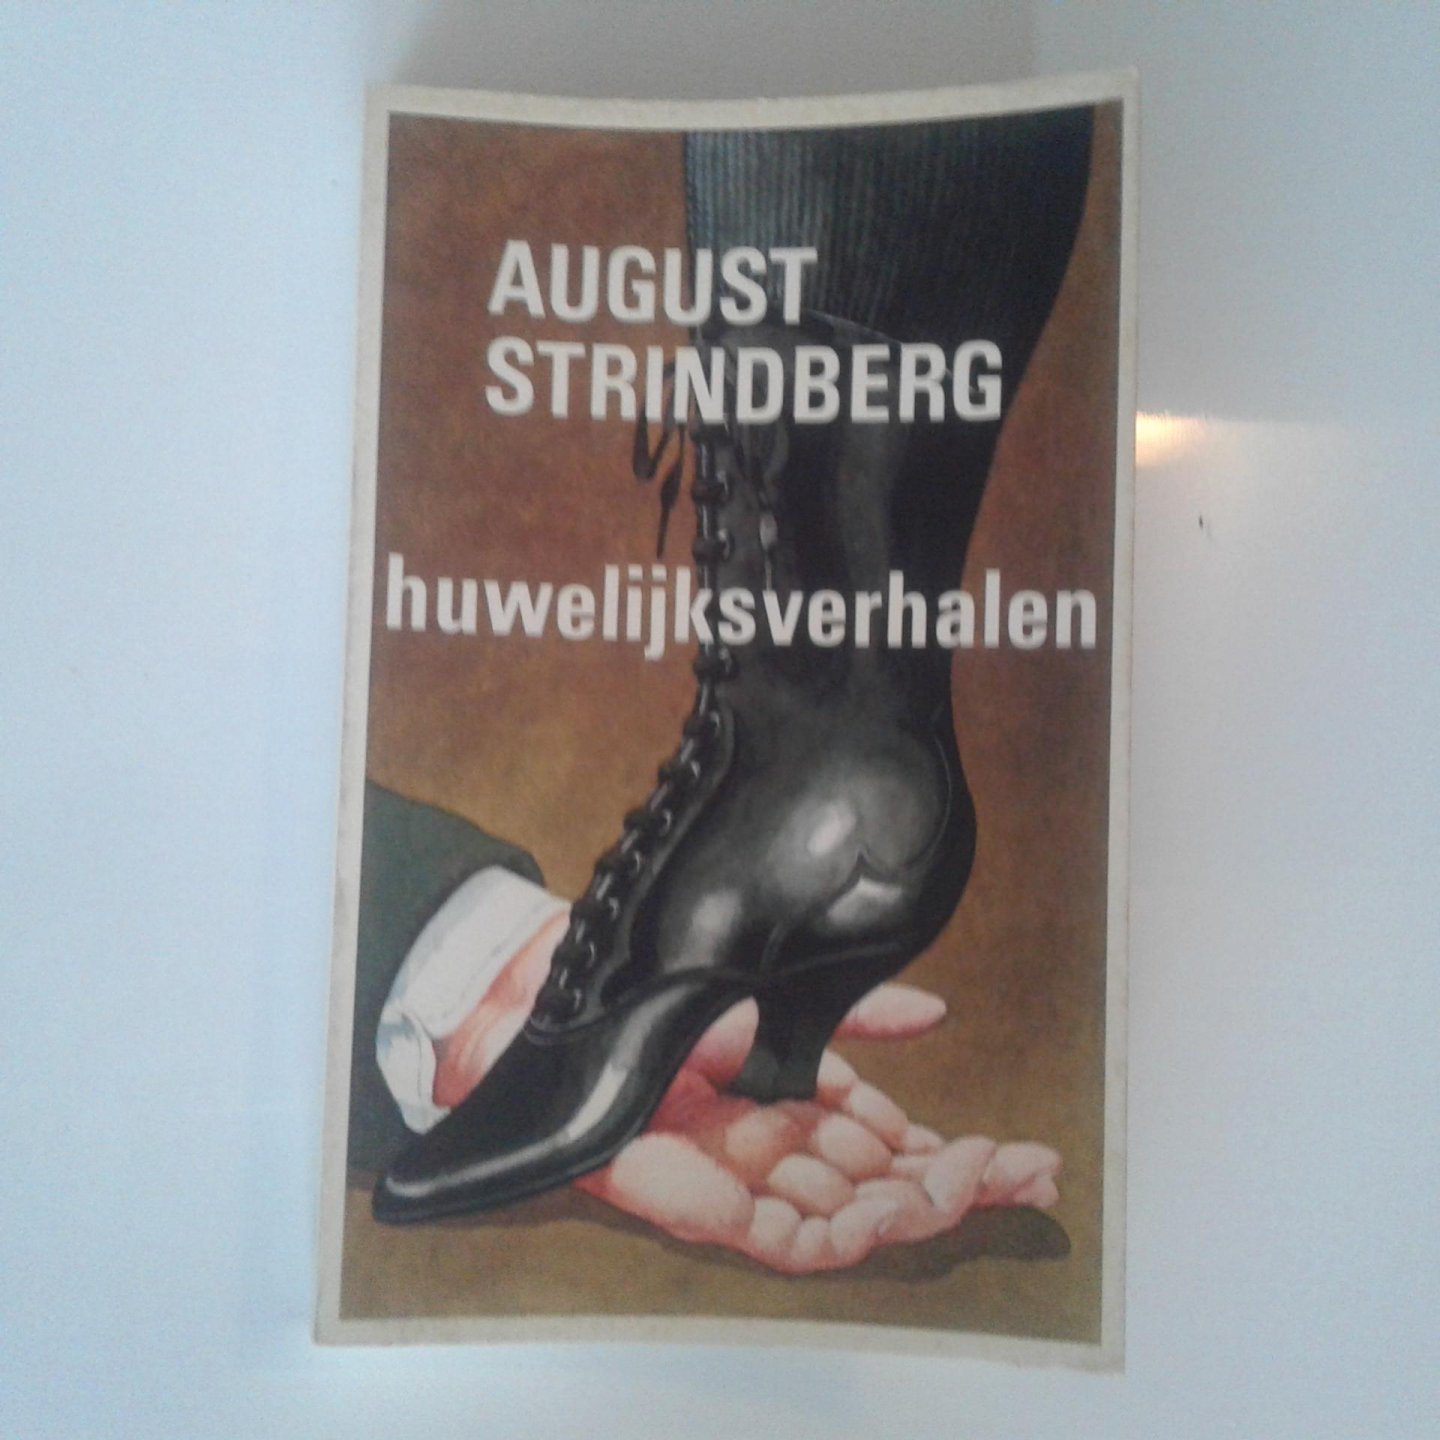 Strindberg, August - August Strindberg ; Huwelijksverhalen